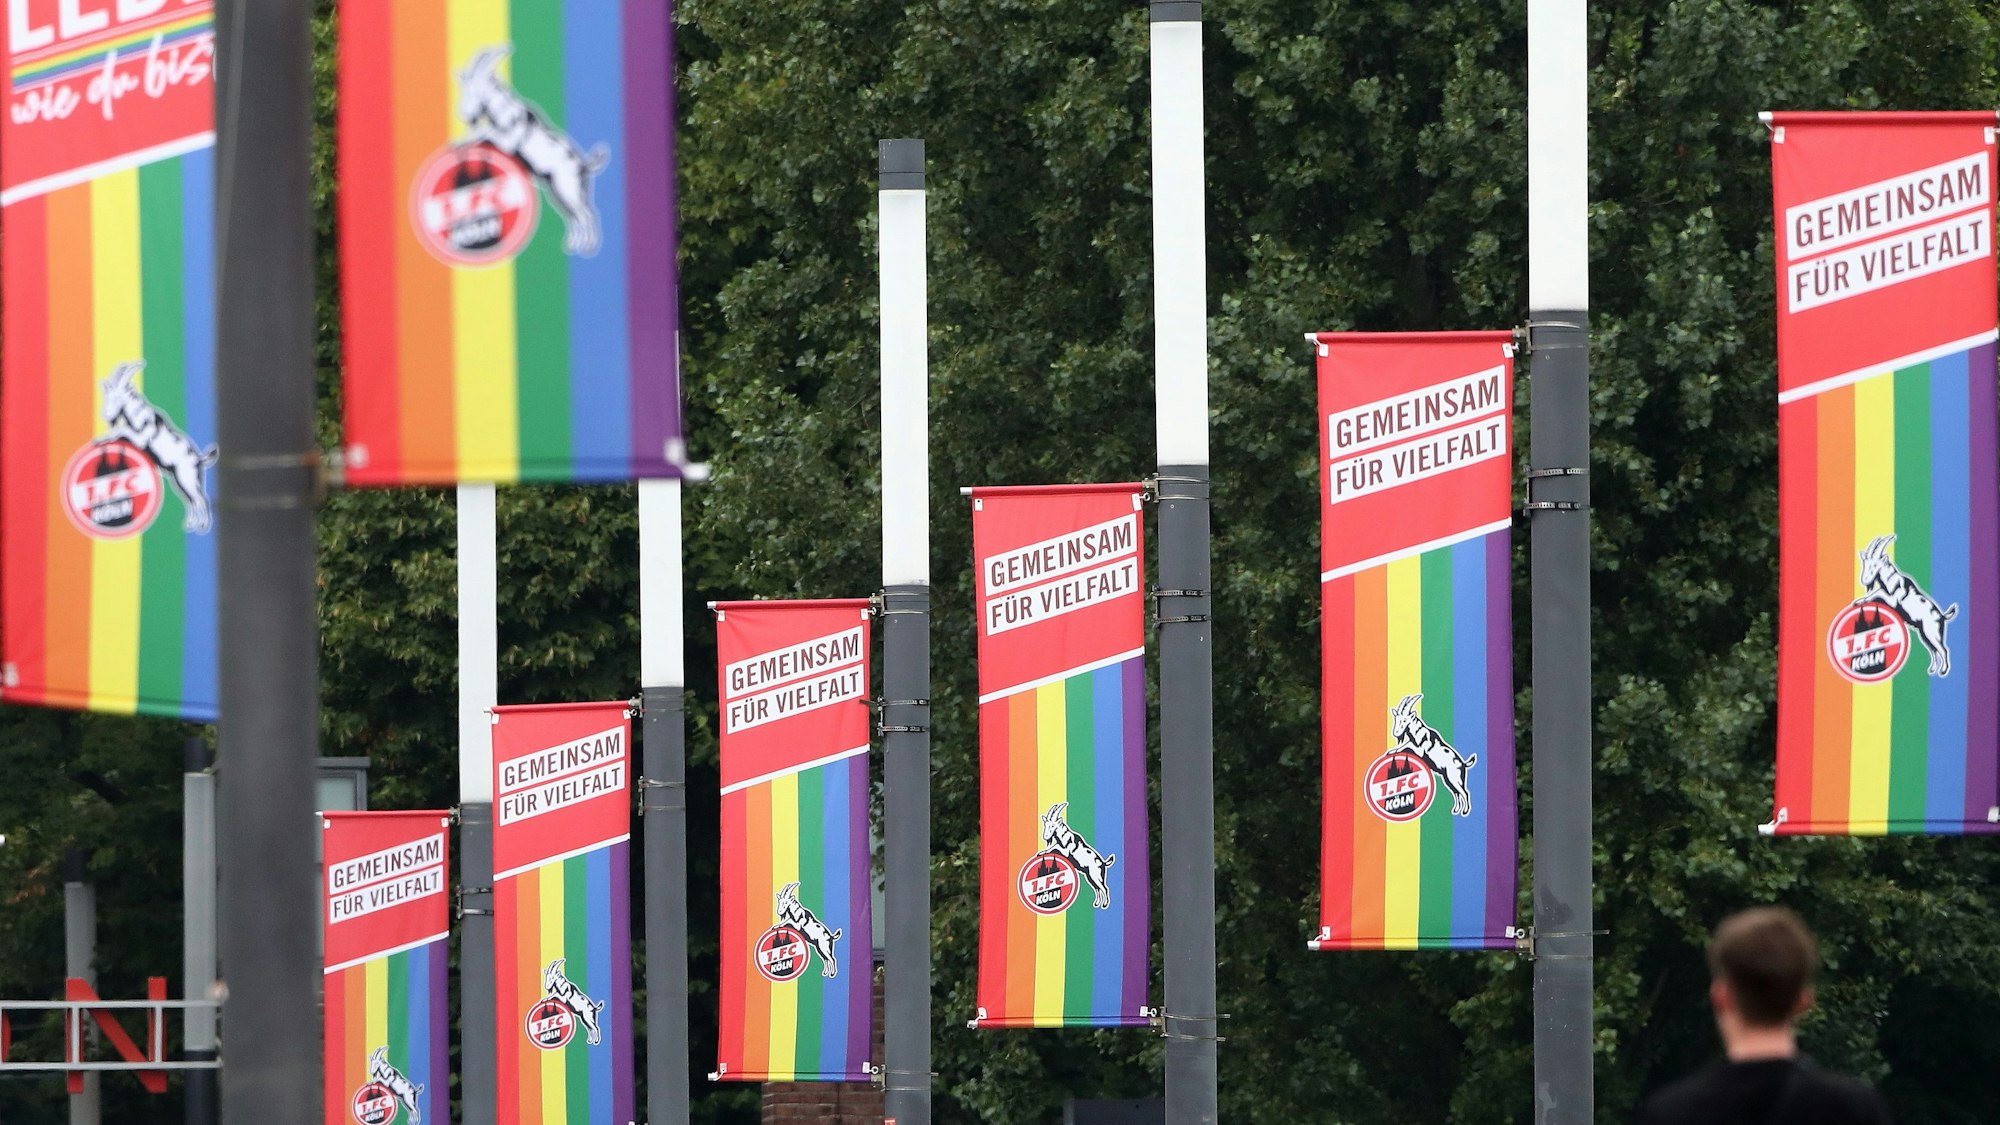 Beflaggung auf dem Oskar-Rehfeldt-Weg (Stadion Vorwiesen): Regenbogenfahne mit Geißbock drauf. Bild: Herbert Bucco








